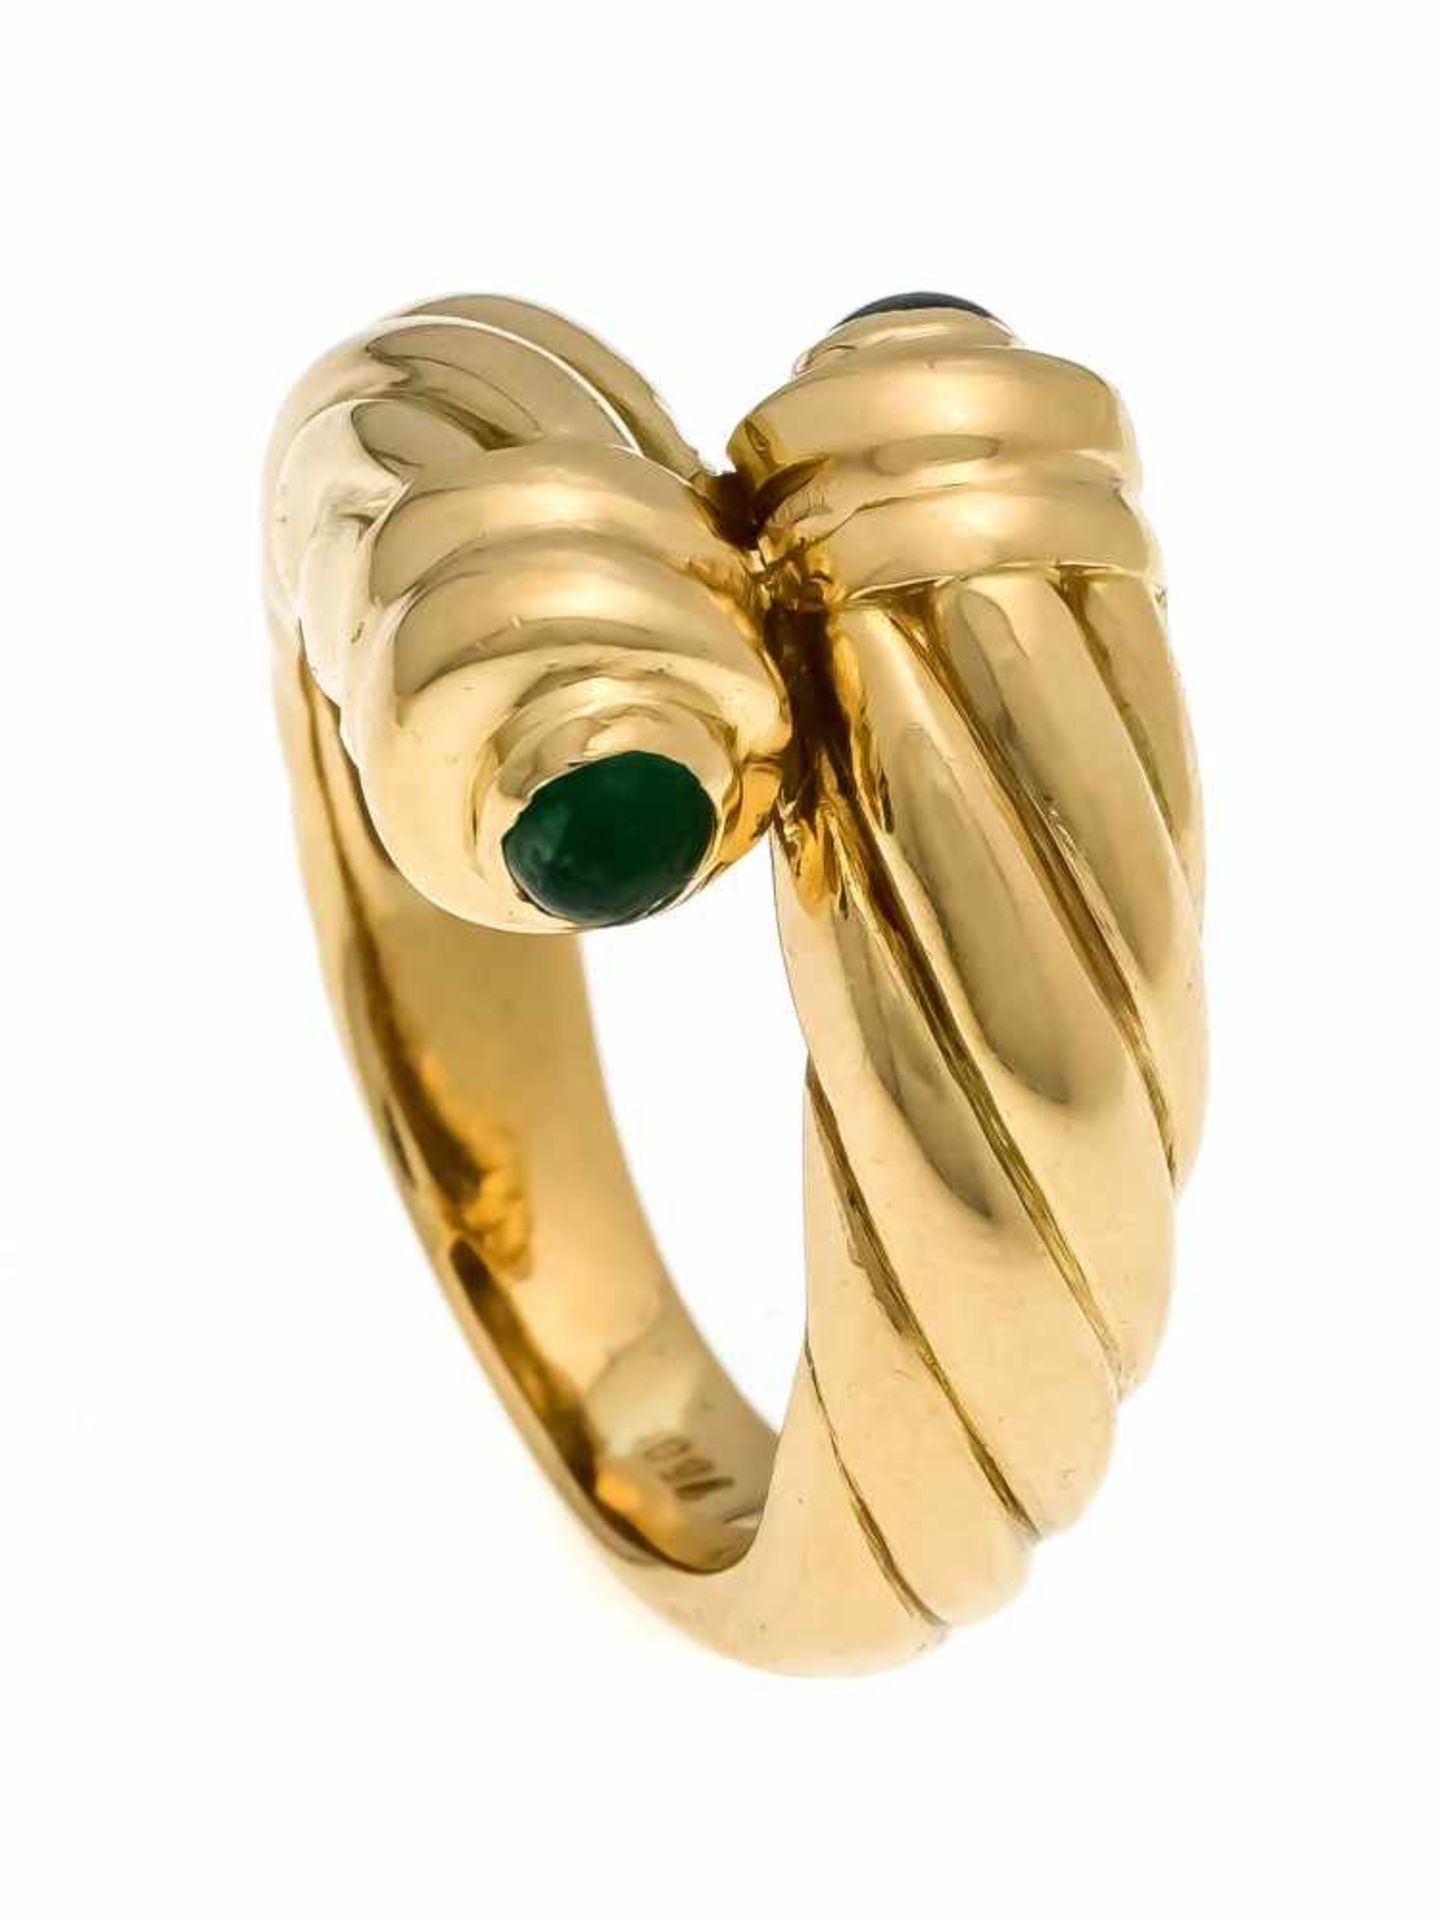 Smaragd-Saphir-Ring GG 750/000 mit je einem runden Smaragd- und Saphir-Cabochon 3,6 mm, RG57, 17,2